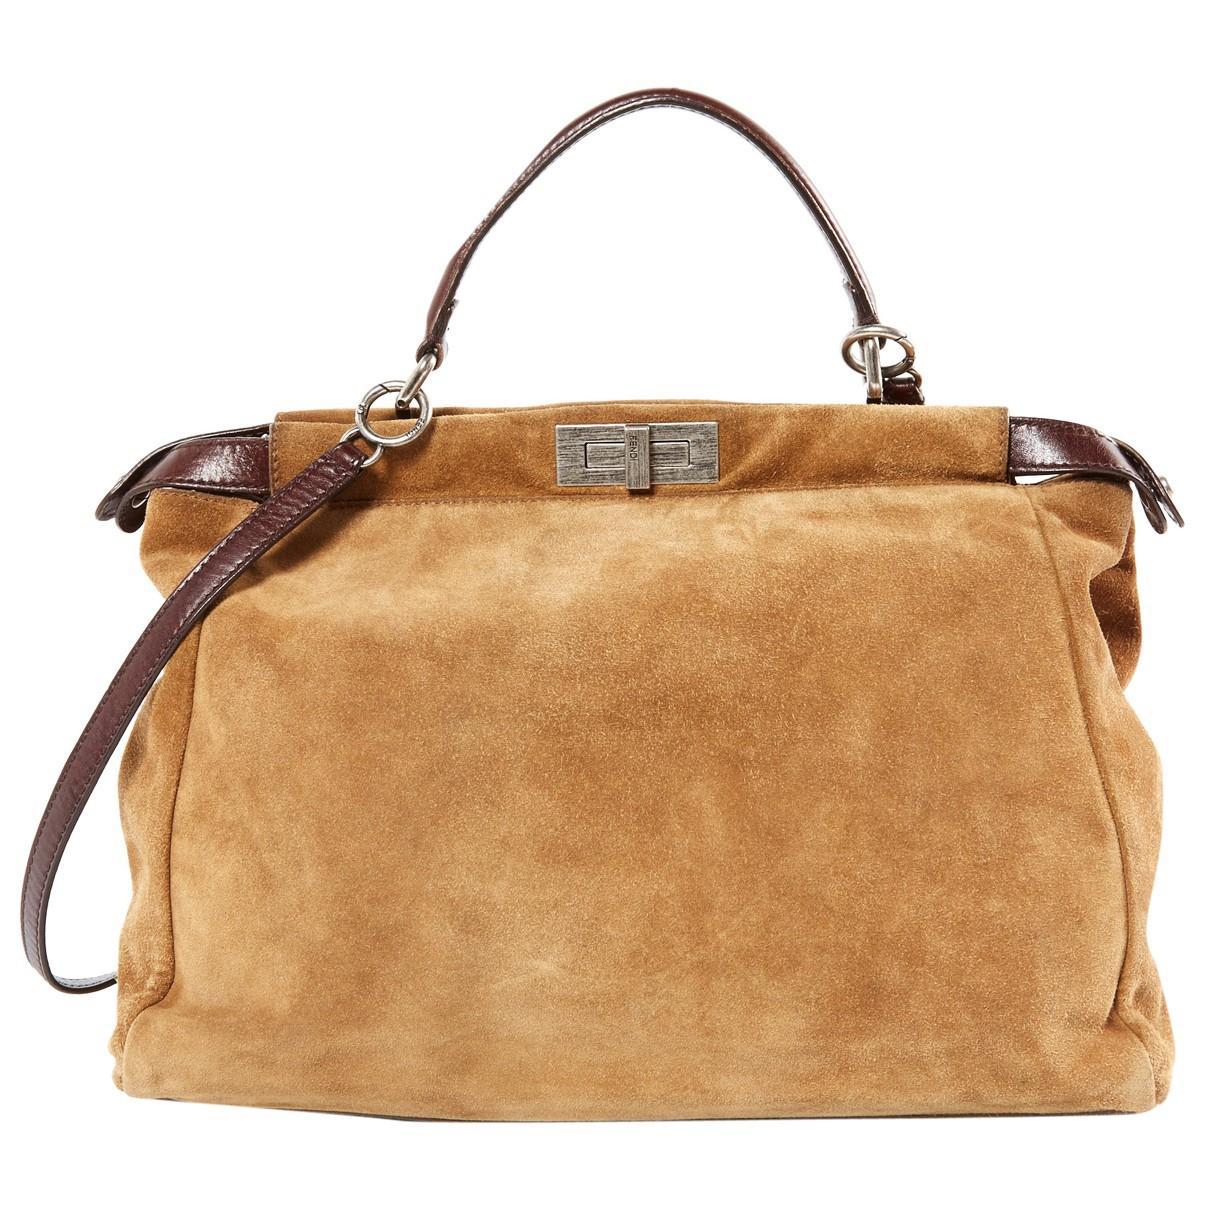 Lyst - Fendi Pre-owned Peekaboo Brown Suede Handbags in Brown